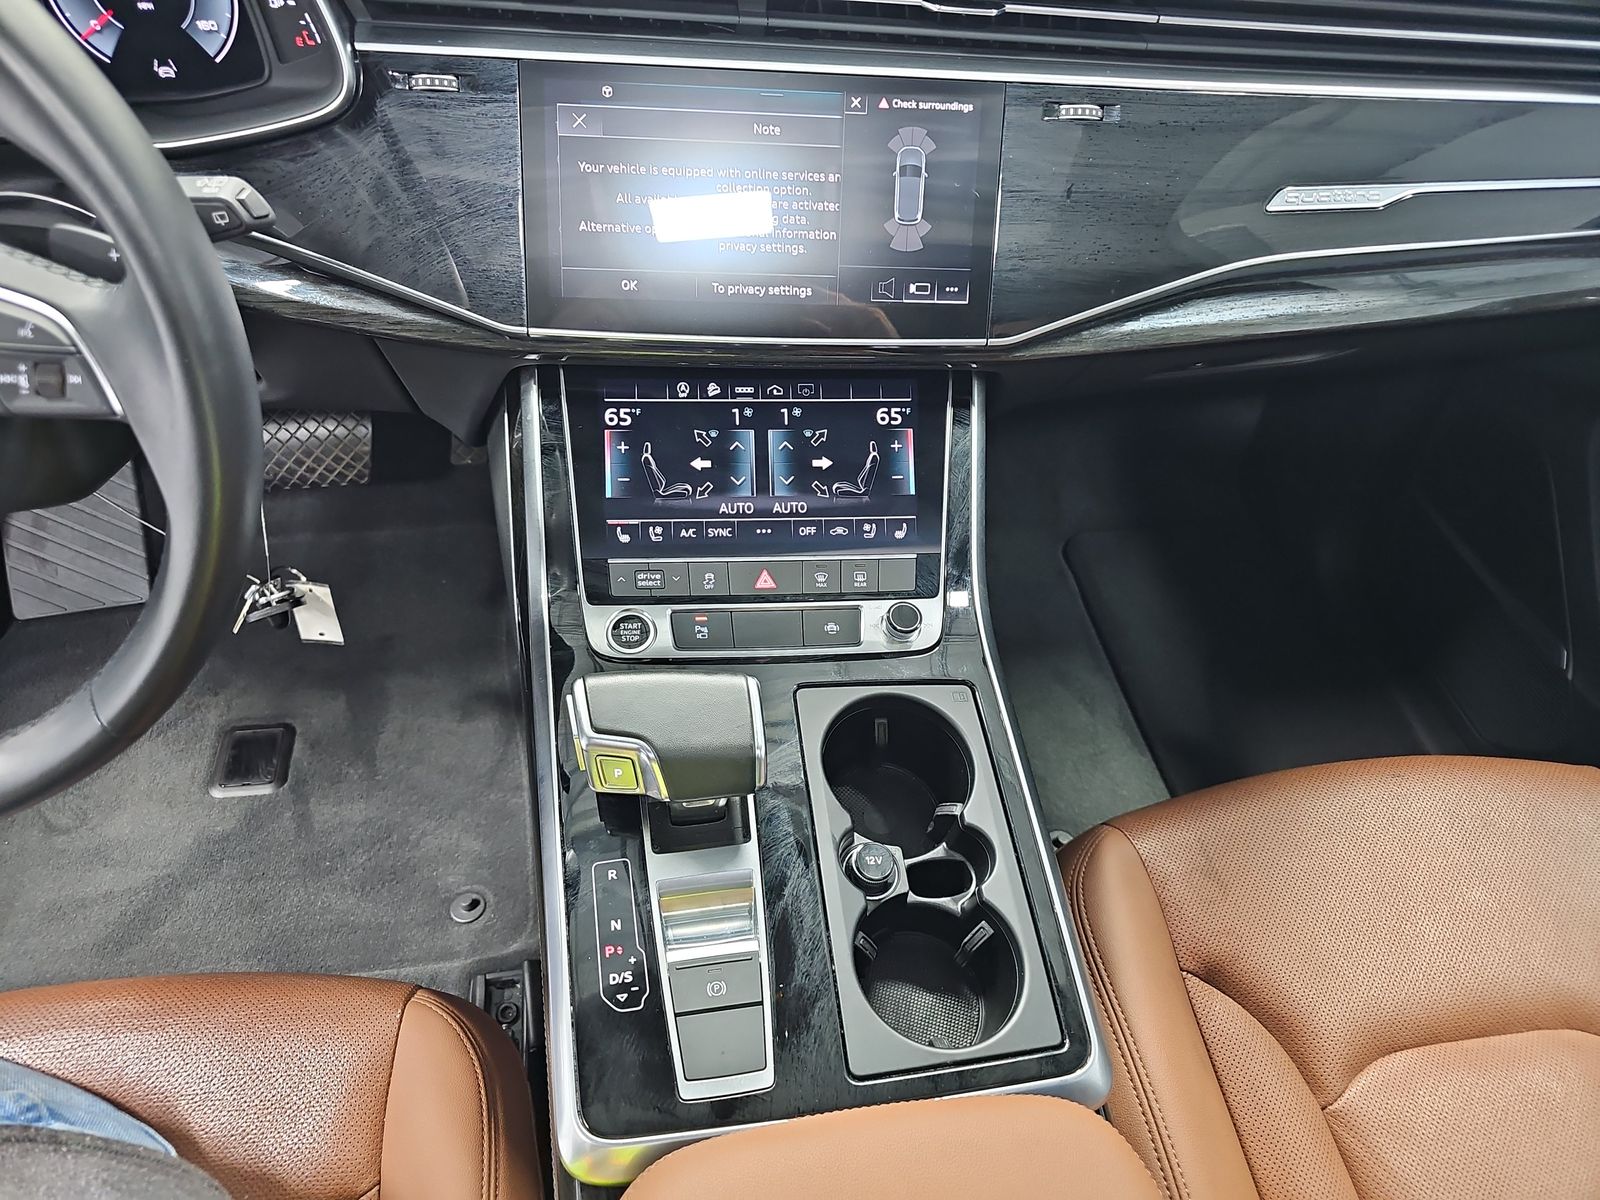 2021 Audi Q7 3.0T Premium Plus AWD